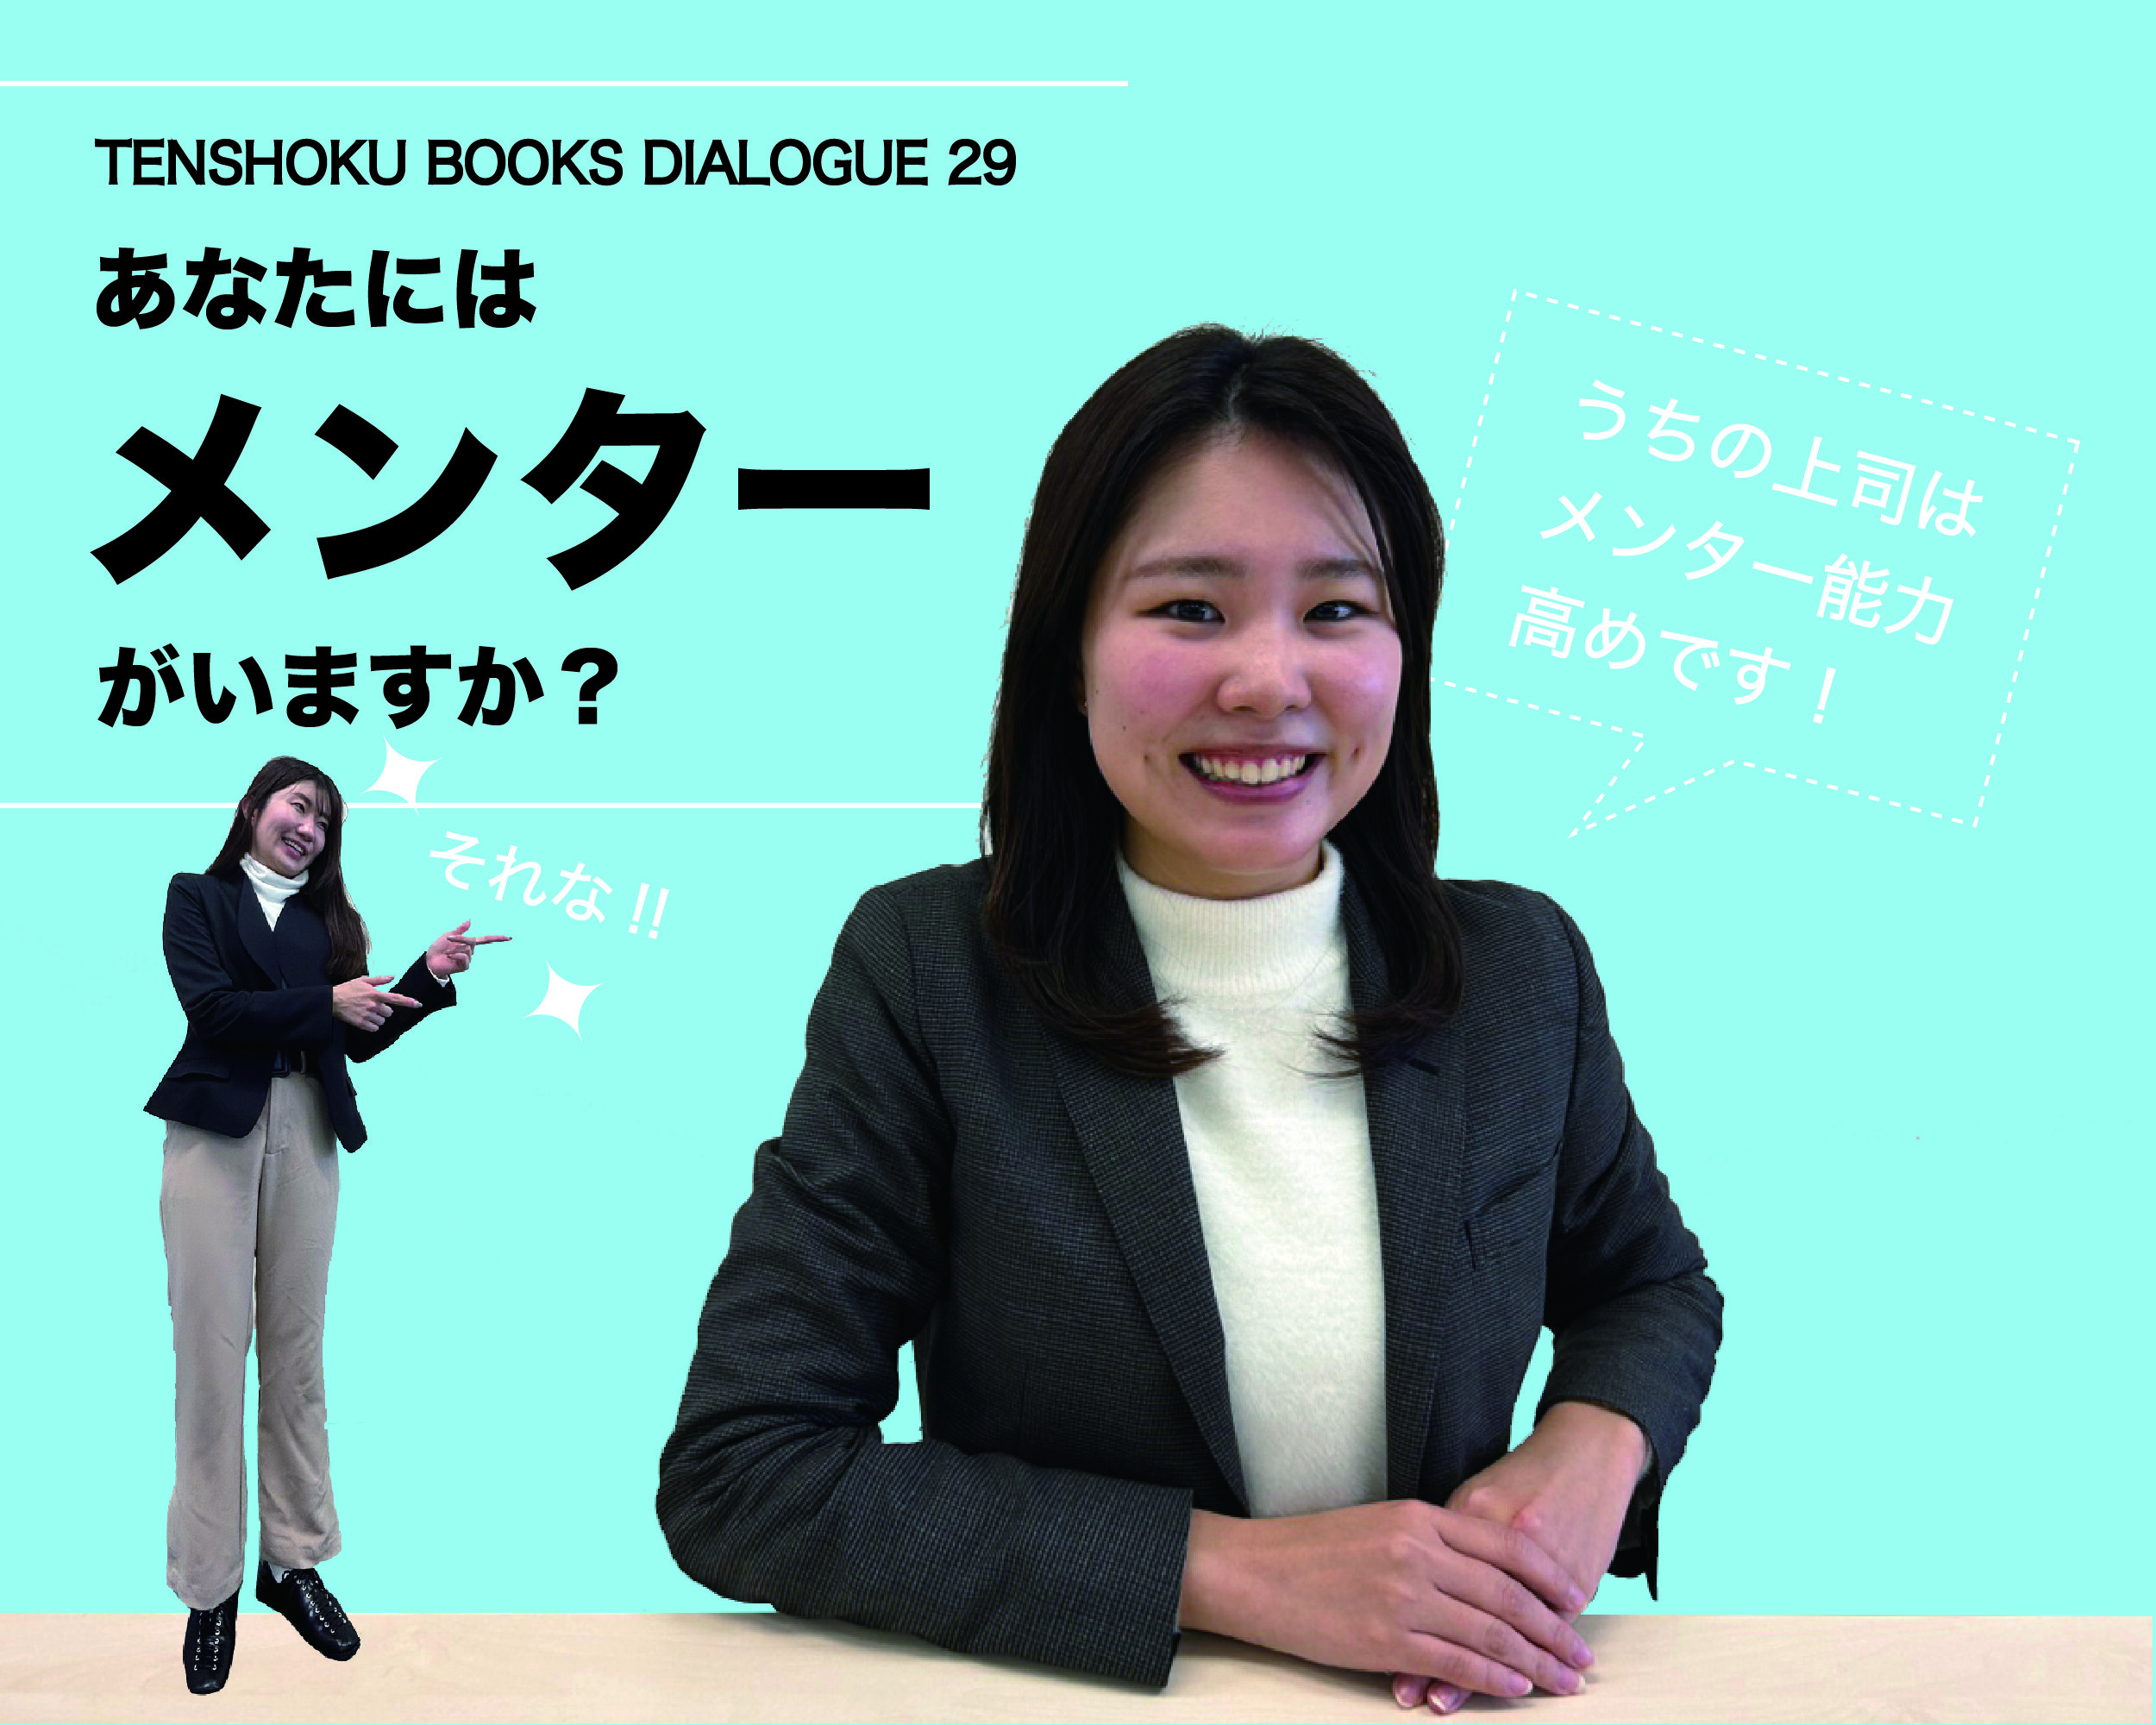 【TENSHOKU BOOKS DIALOGUE29】 メンターの力をキャリアアップにつなげる〜『無敵の転職』を読んで〜